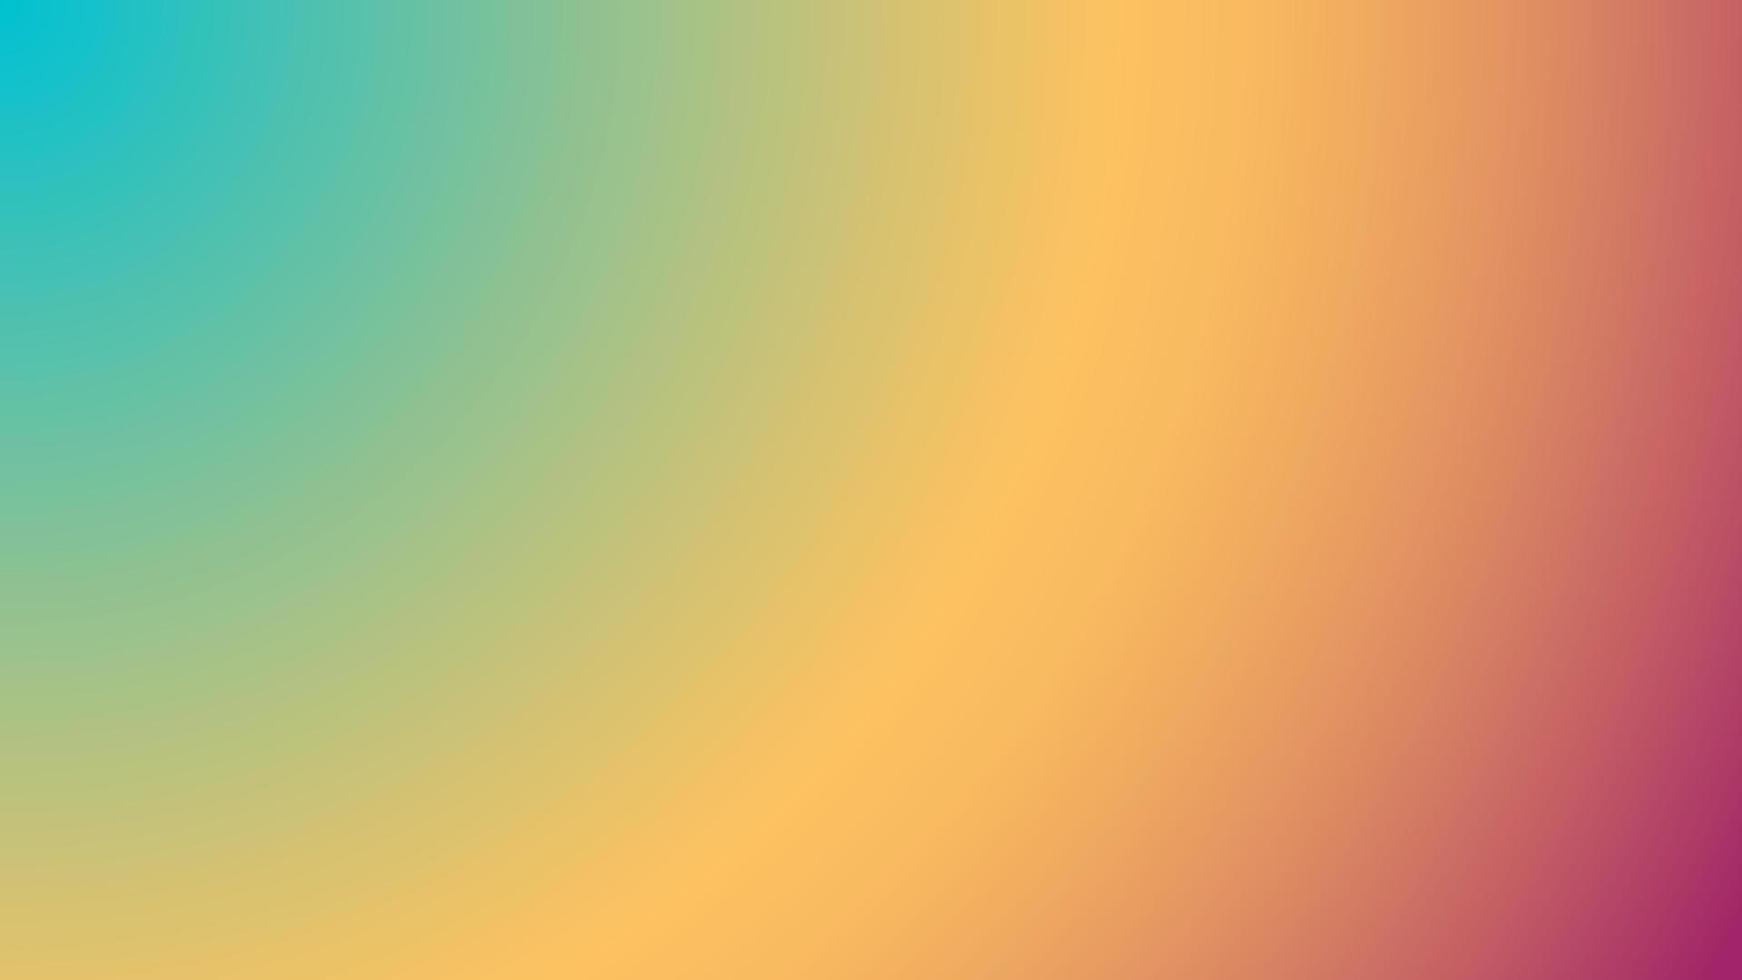 abstrakter unscharfer Hintergrund mit Farbverlauf. bunte glatte Banner-Vorlage. Mesh-Hintergrund mit hellen Farben. Vektor